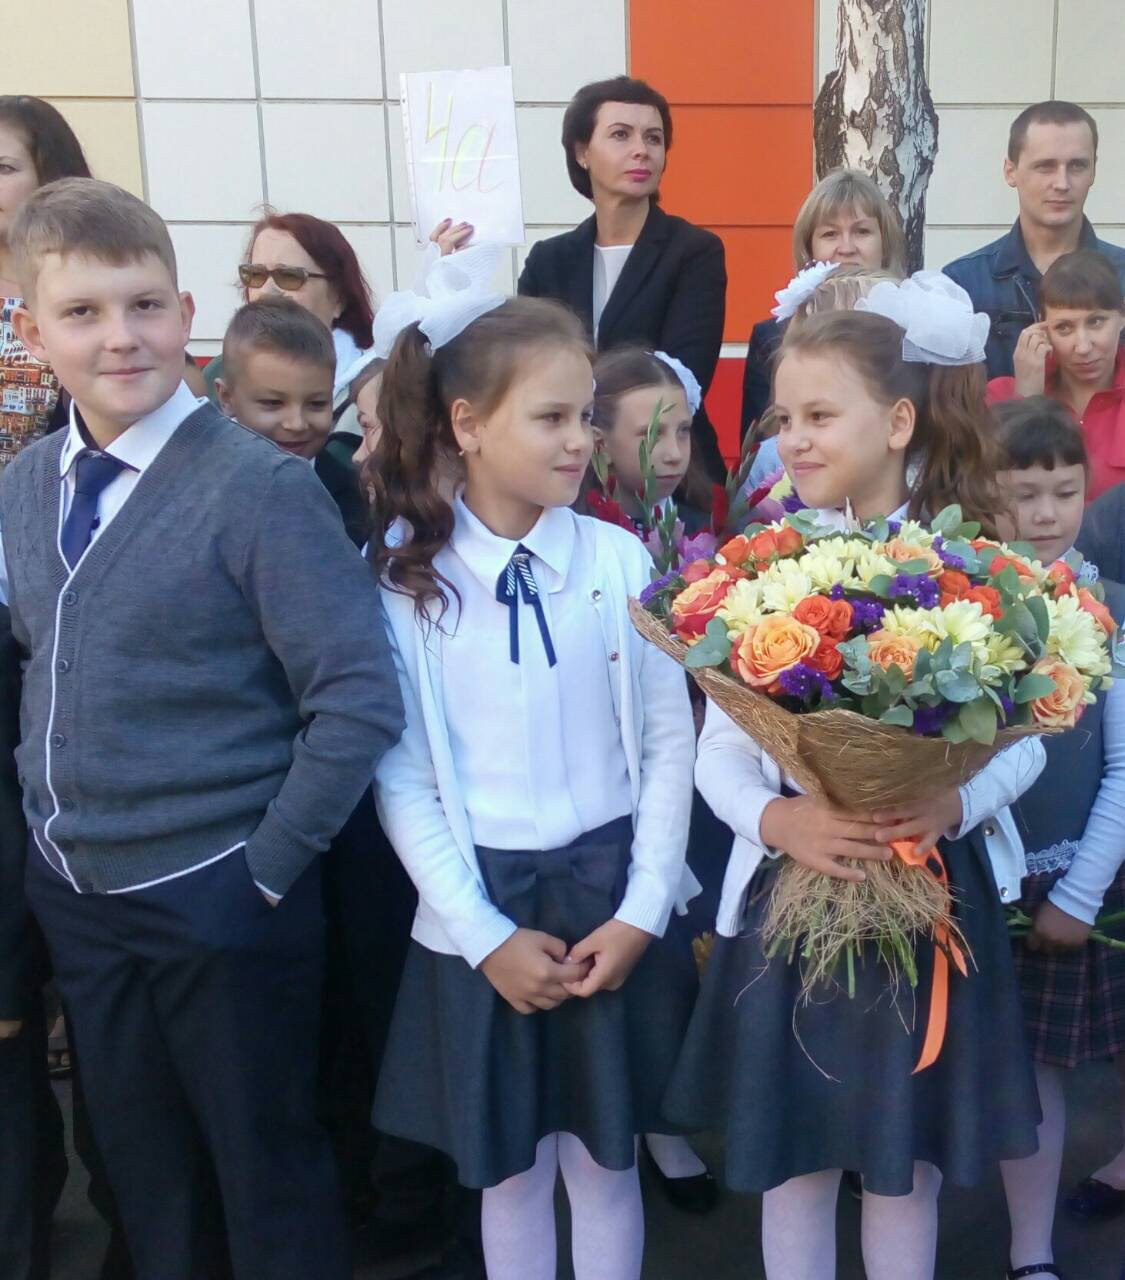 Людмила Кругова пишет: "Уже в четвёртый класс пошли мои внучки! Ура!!!"